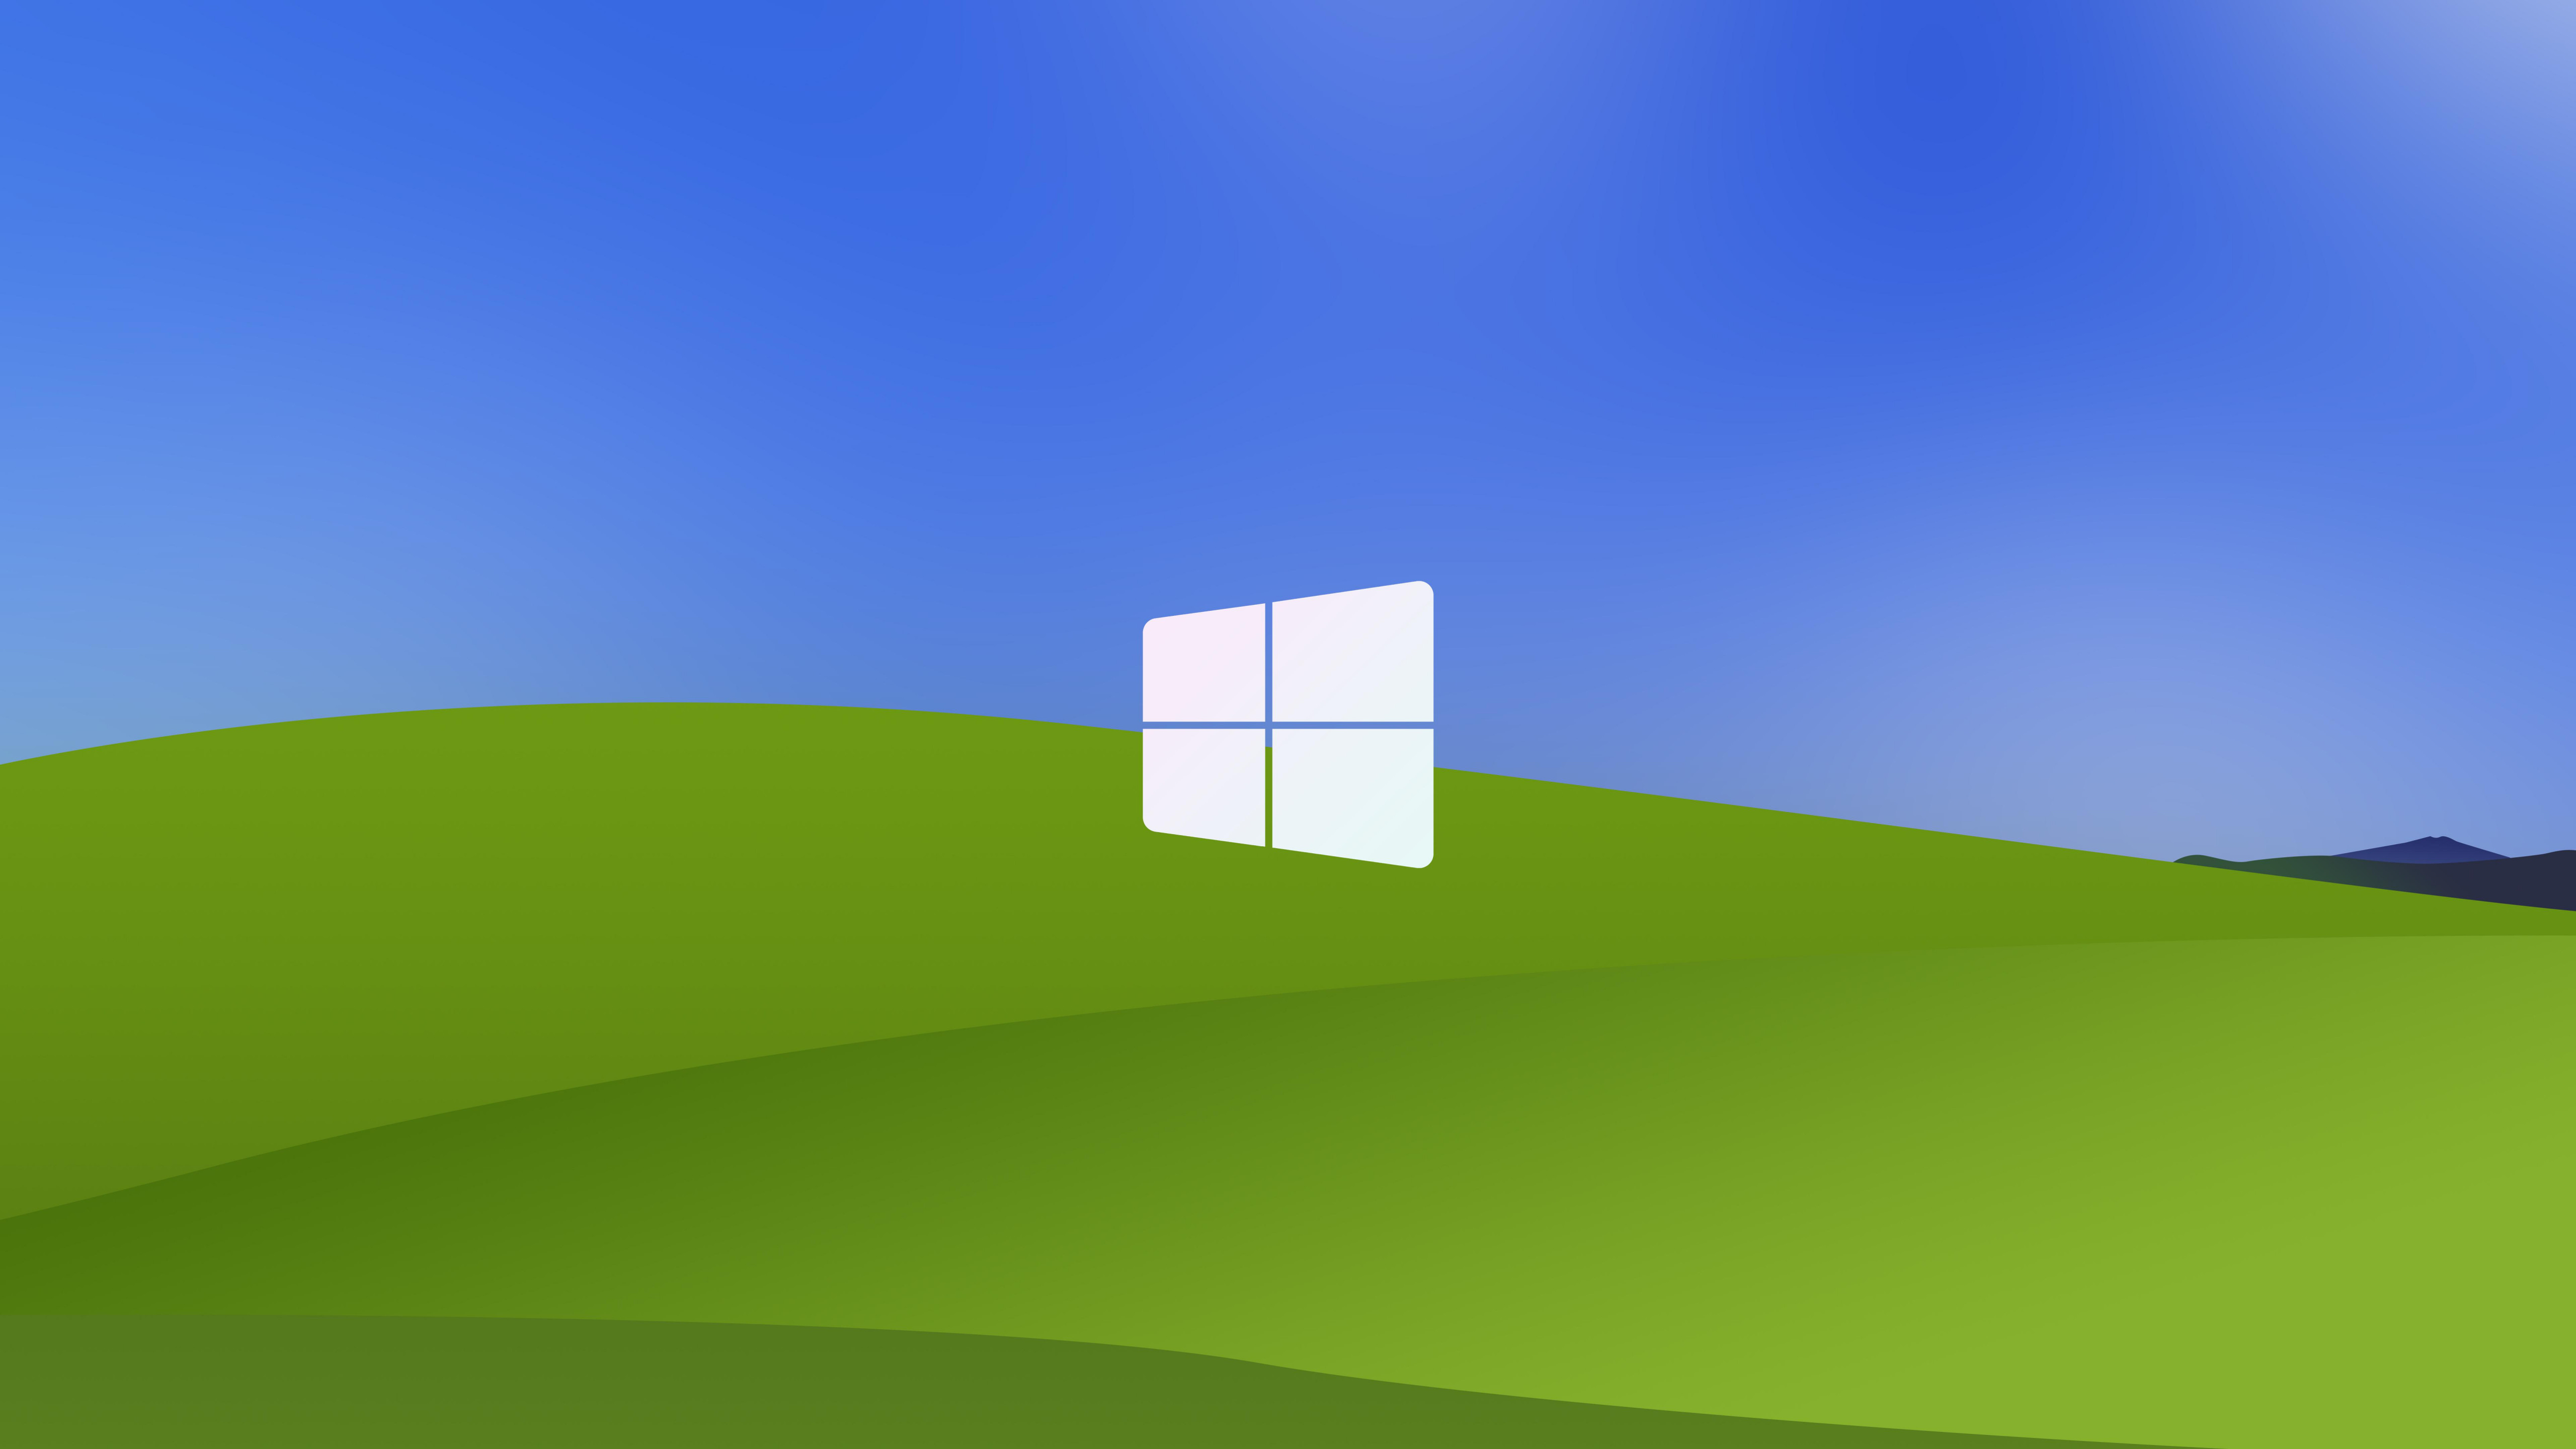 Tận hưởng trải nghiệm sử dụng máy tính của bạn với hình nền Windows XP đẹp và sáng tạo. Các hình ảnh đẹp mắt, không gian bắt mắt sẽ giúp bạn nâng cao tinh thần làm việc và tạo ra một không gian làm việc mới, tươi mới và cảm giác rất thú vị.